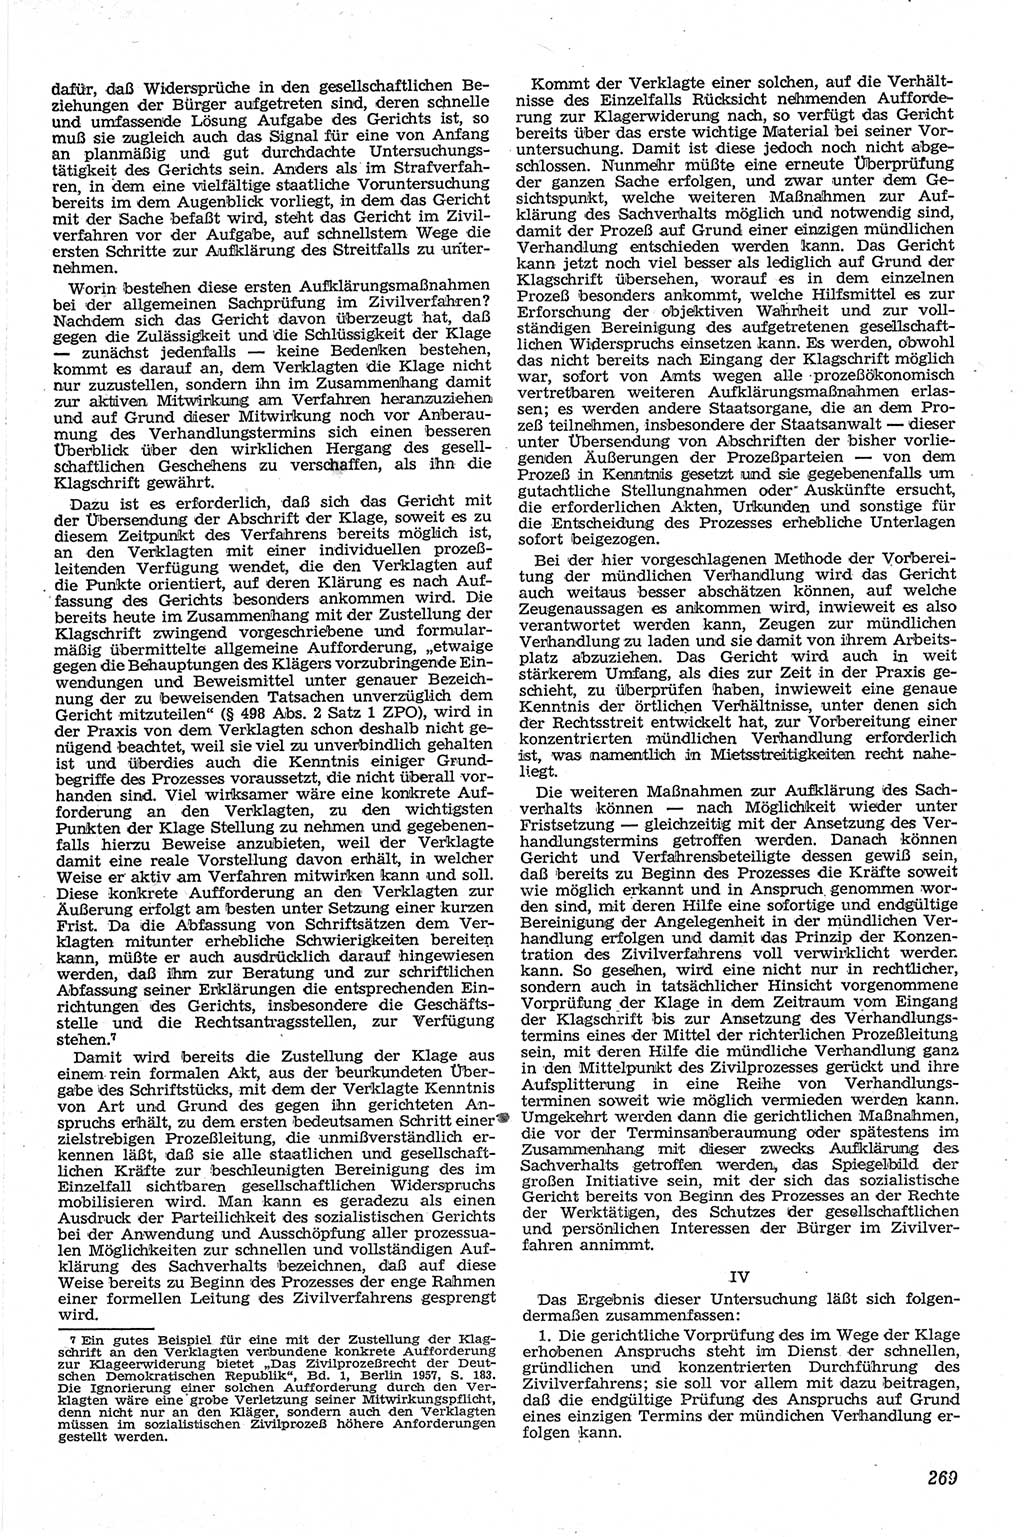 Neue Justiz (NJ), Zeitschrift für Recht und Rechtswissenschaft [Deutsche Demokratische Republik (DDR)], 13. Jahrgang 1959, Seite 269 (NJ DDR 1959, S. 269)